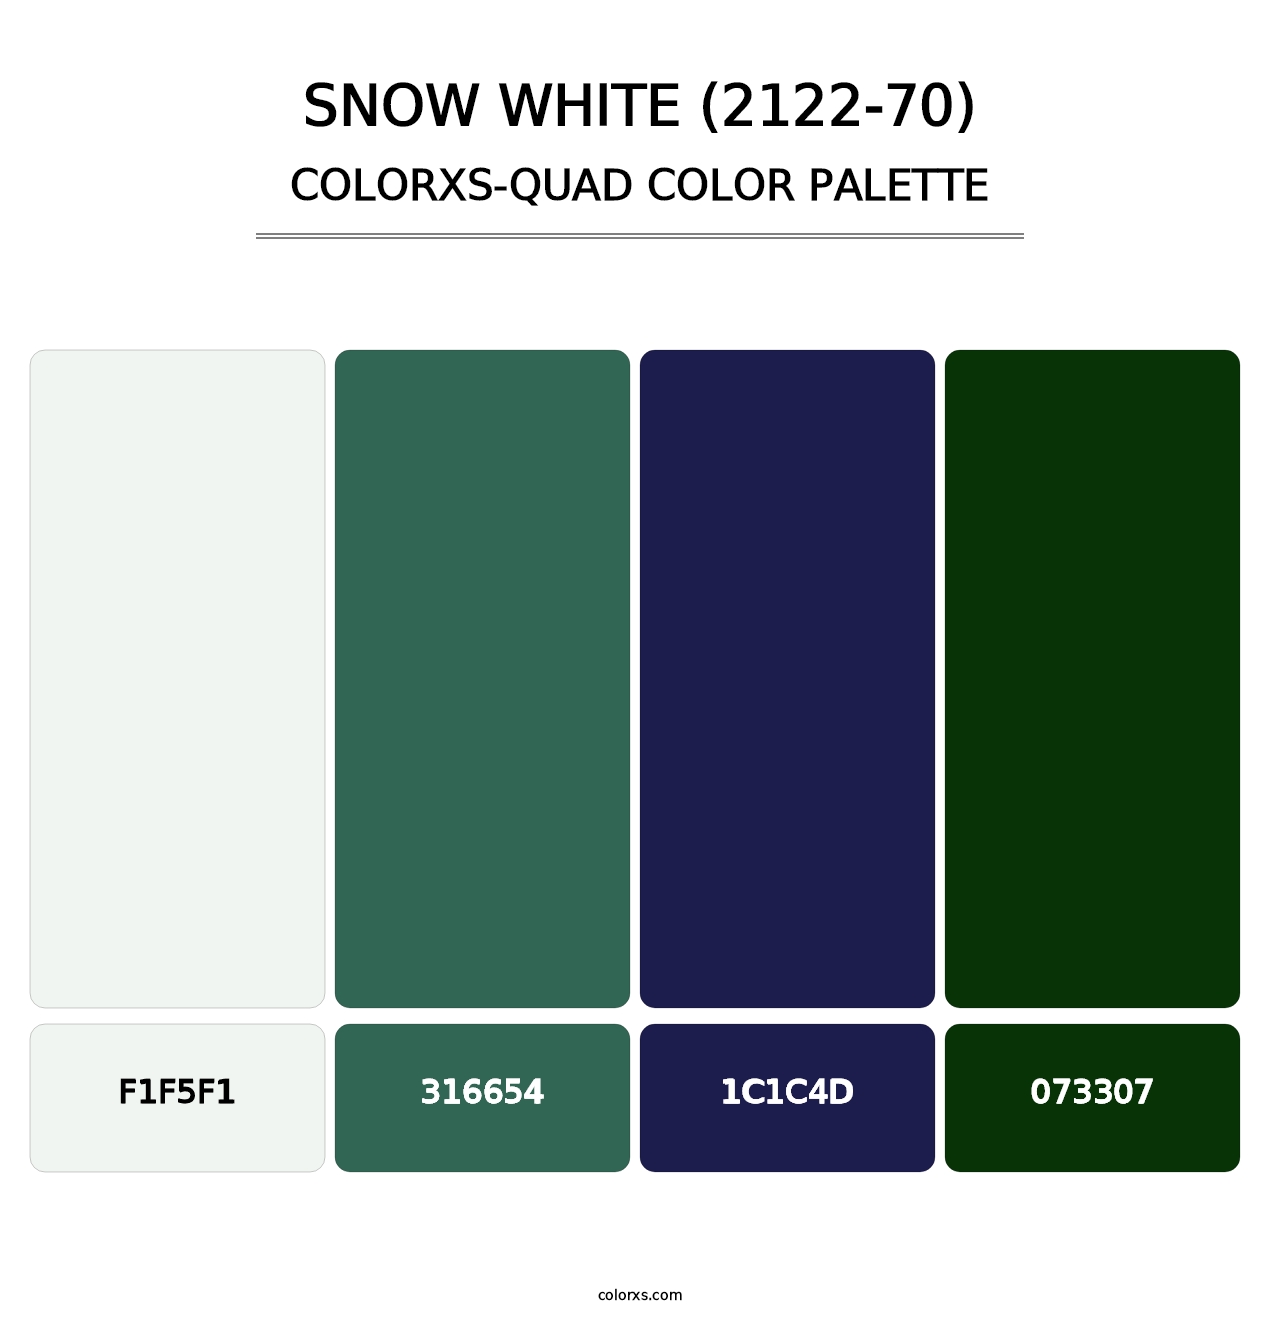 Snow White (2122-70) - Colorxs Quad Palette